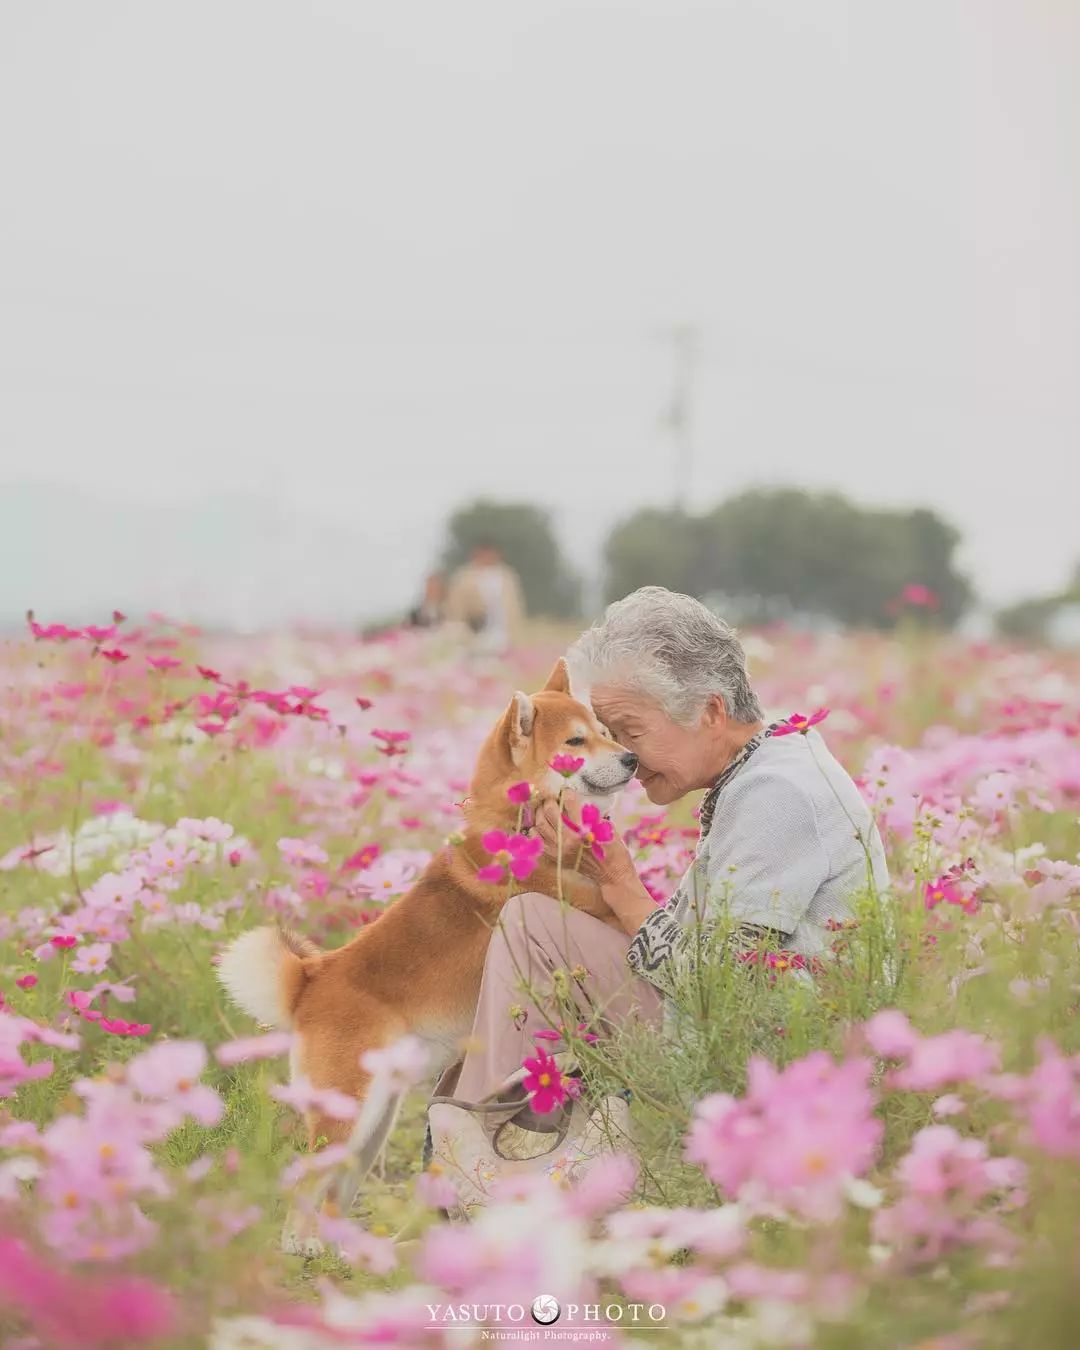 奶奶和柴犬一张照片,暖哭12万网友:岁月静好,愿时光不老